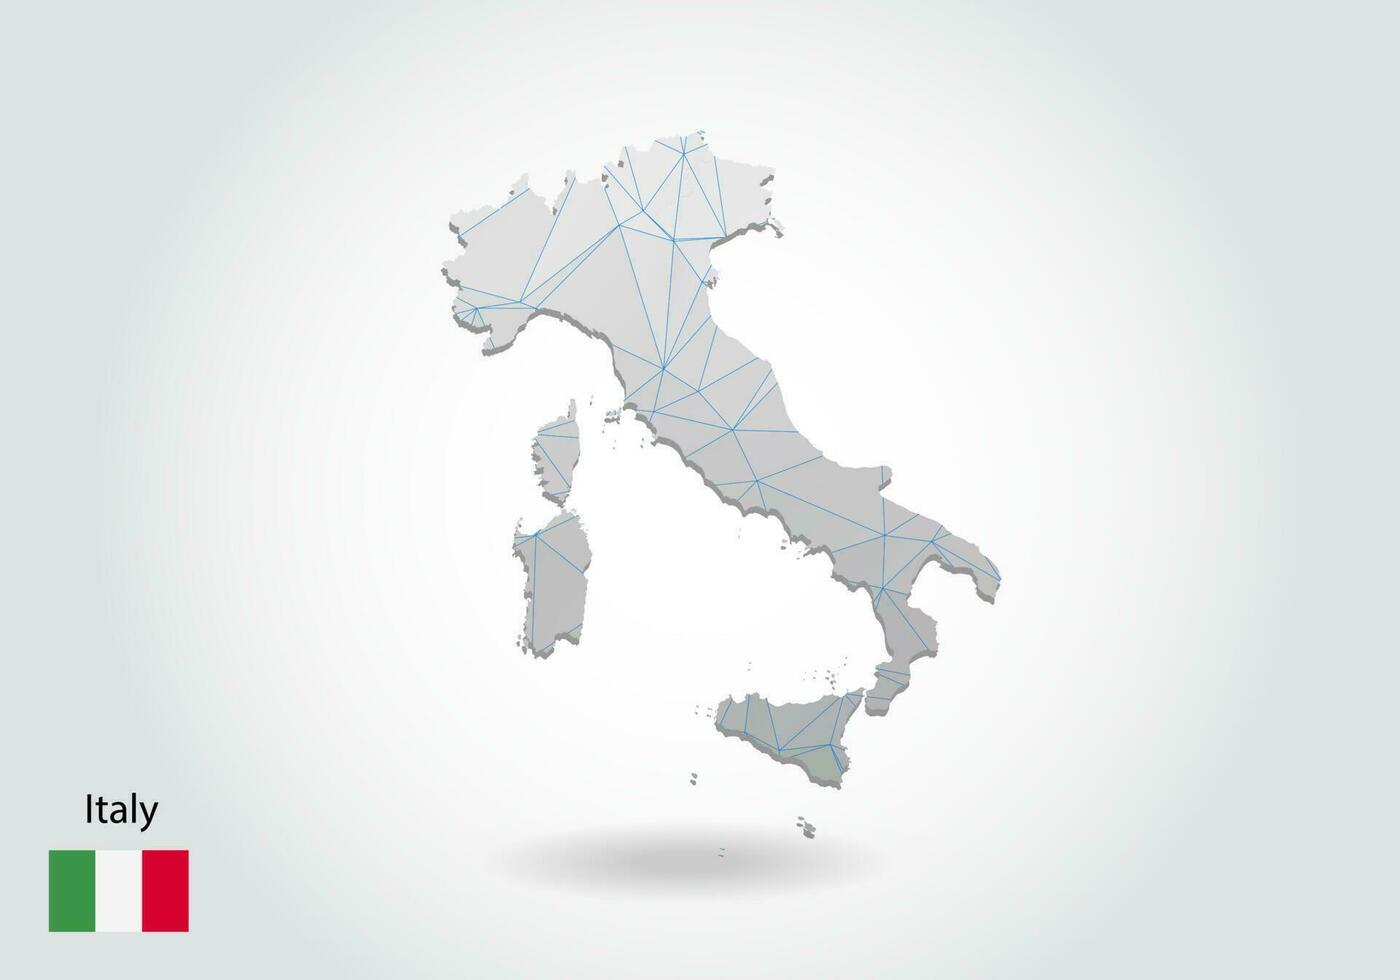 vektorkarte von italien mit trendigem dreiecksdesign im polygonalen stil auf dunklem hintergrund, kartenform im modernen 3d-papierschnittkunststil. geschichtetes Papierschnitt-Design. vektor